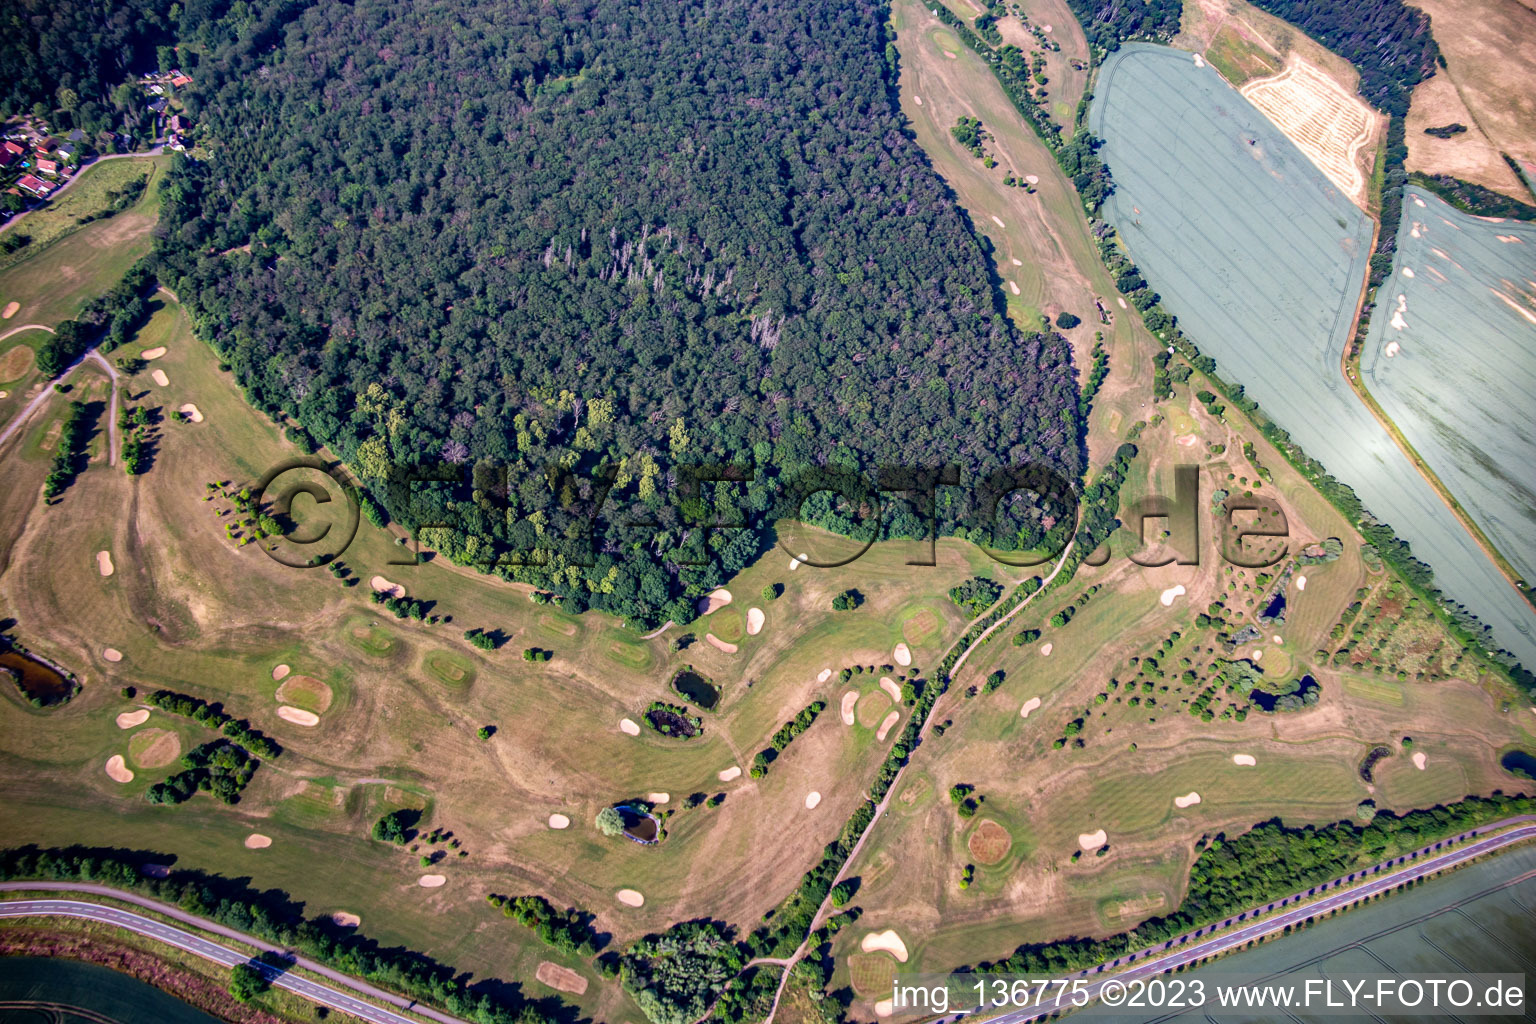 Golf Club Schloß Meisdorf eV in the district Meisdorf in Falkenstein in the state Saxony-Anhalt, Germany seen from above